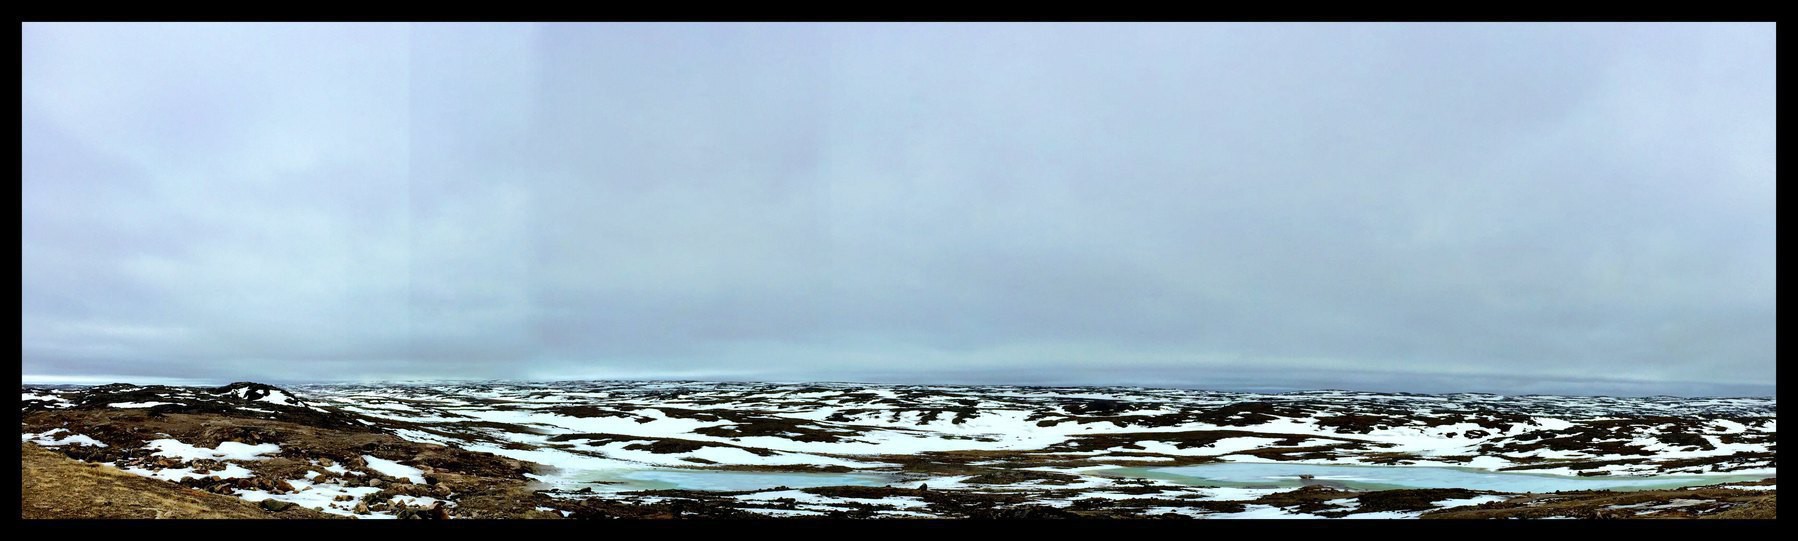 Arctic tundra